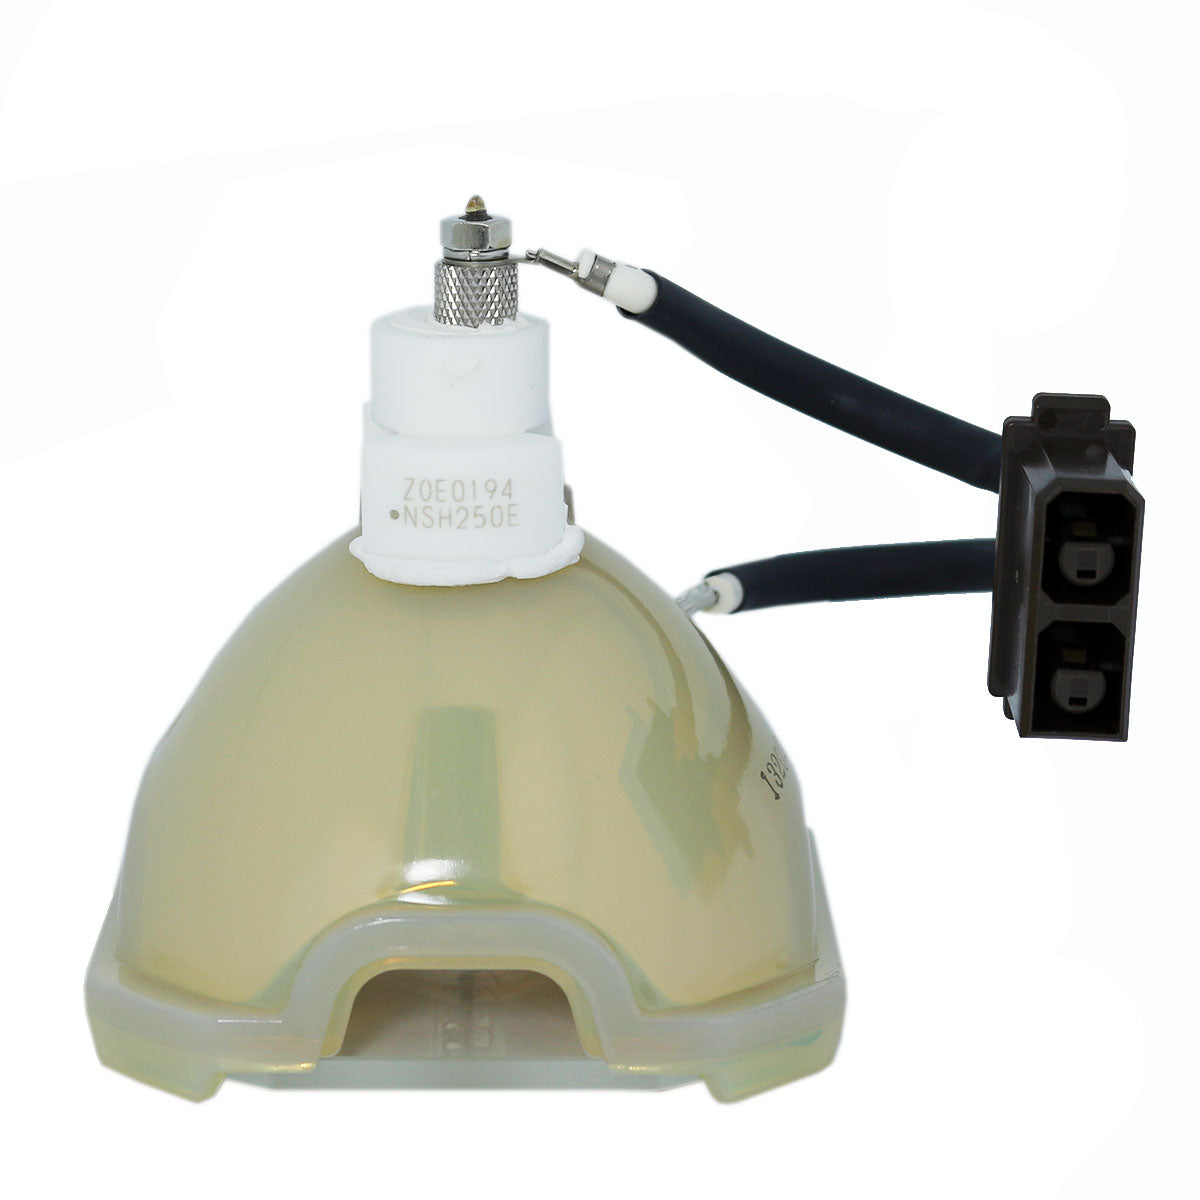 Ushio NSH250E + Connector B Ushio Projector Bare Lamp